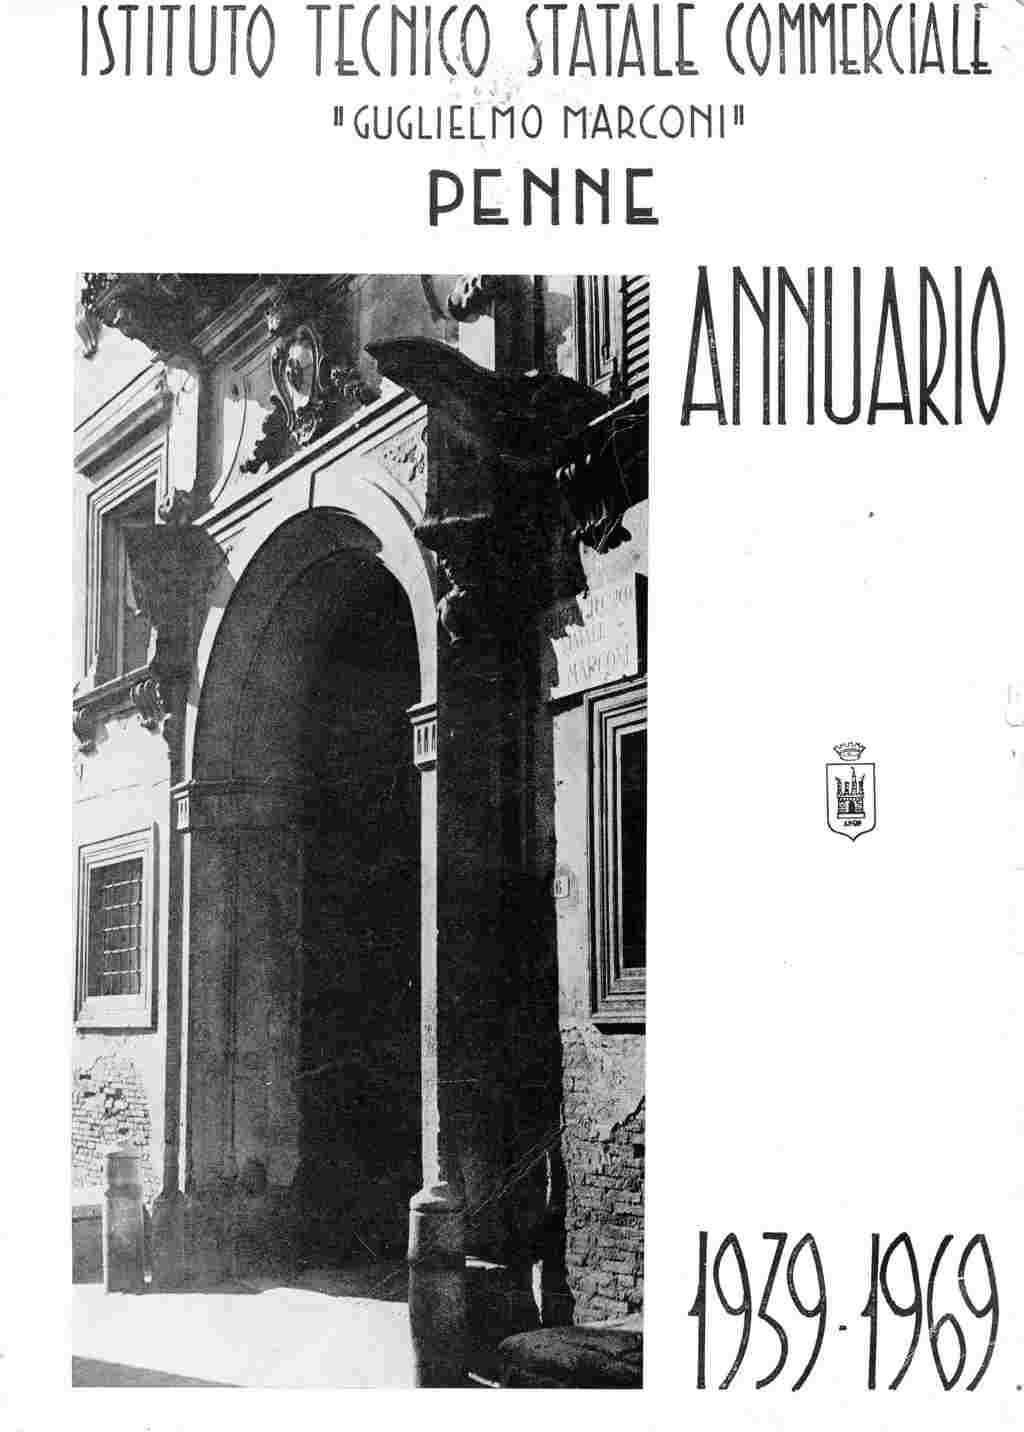 1969 - Annuario dell'Istituto Tecnico Statale